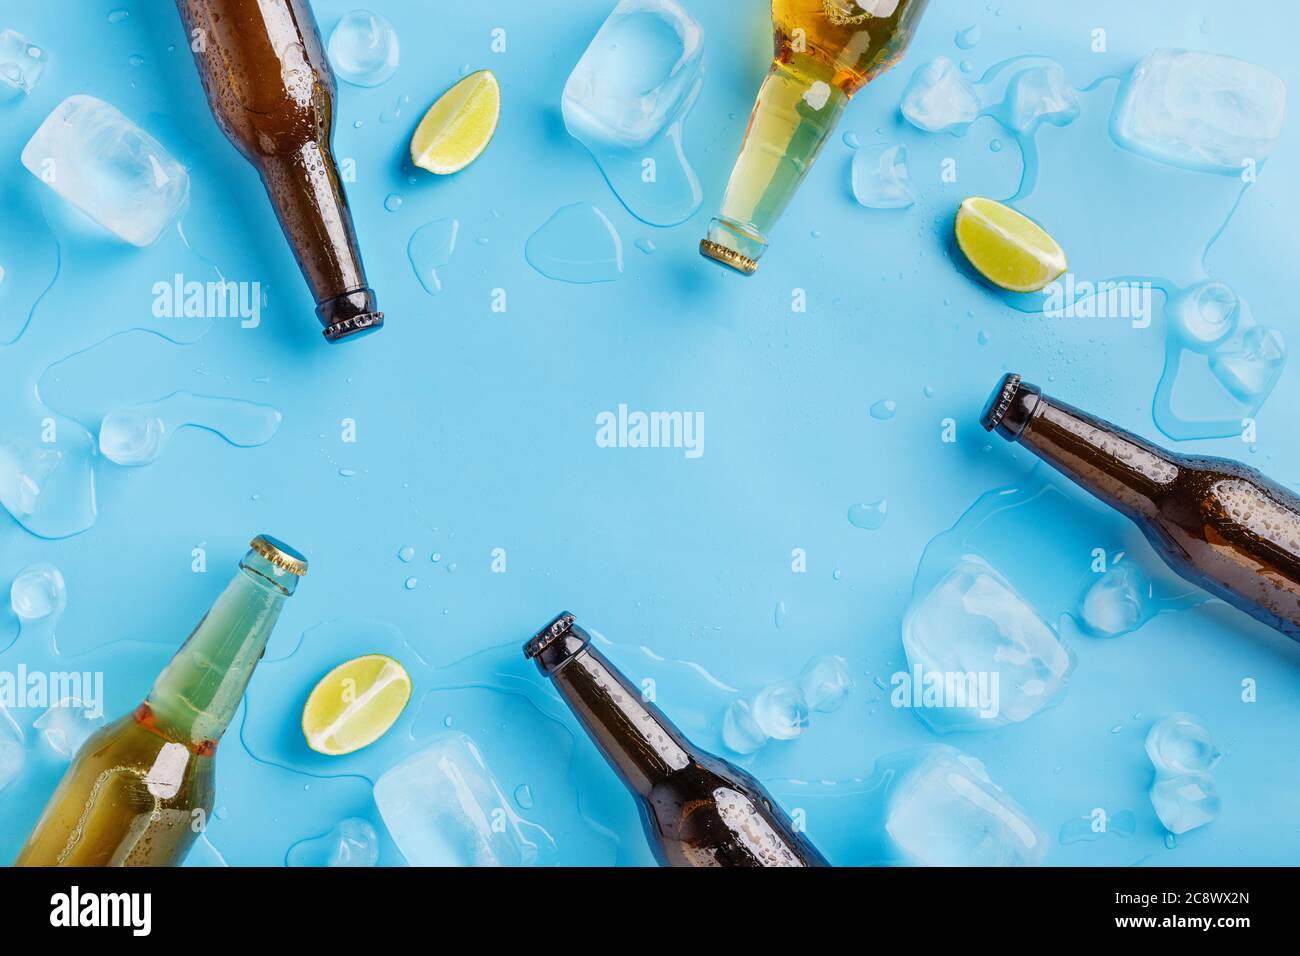 Bouteilles de bière en verre foncé et clair sans étiquette avec glace et morceaux de chaux sur fond bleu Banque D'Images